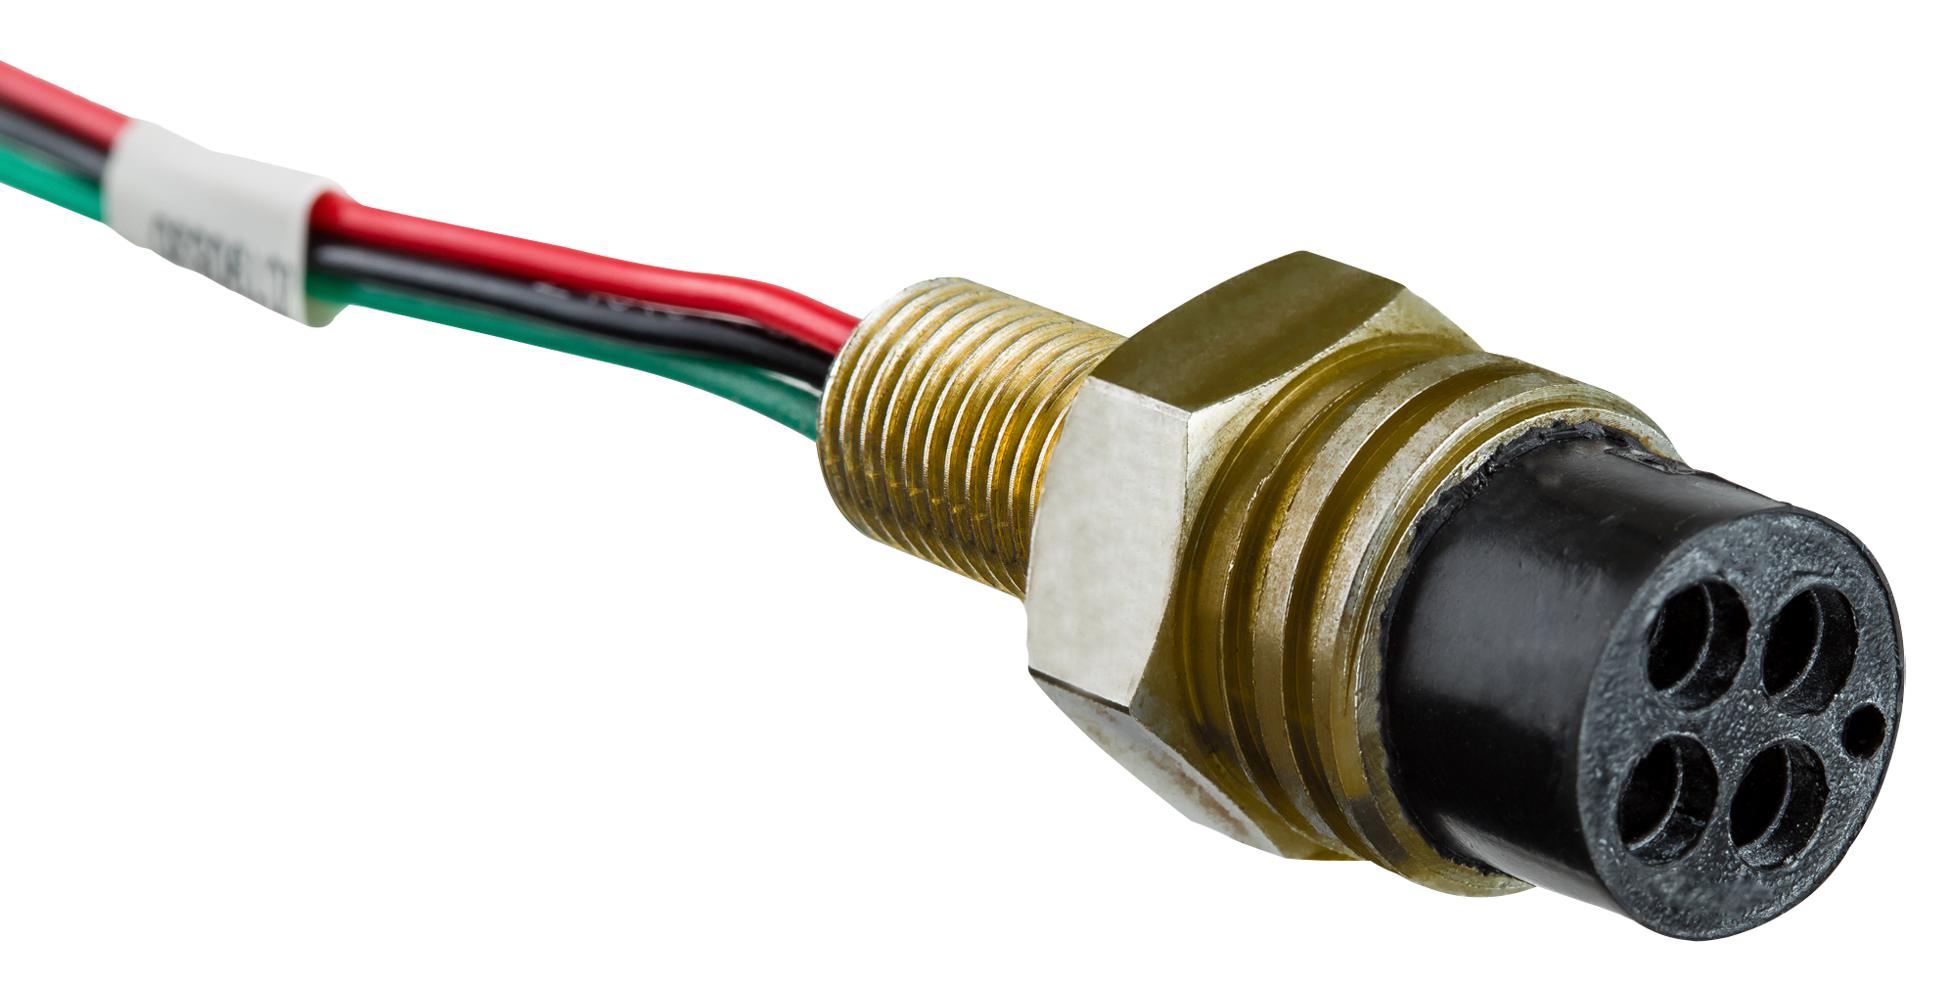 Amphenol LTW Dt-Hcm-G4Bmm-Rla60 Cable Assy, 4P Cir Plug-Free End, 23.6